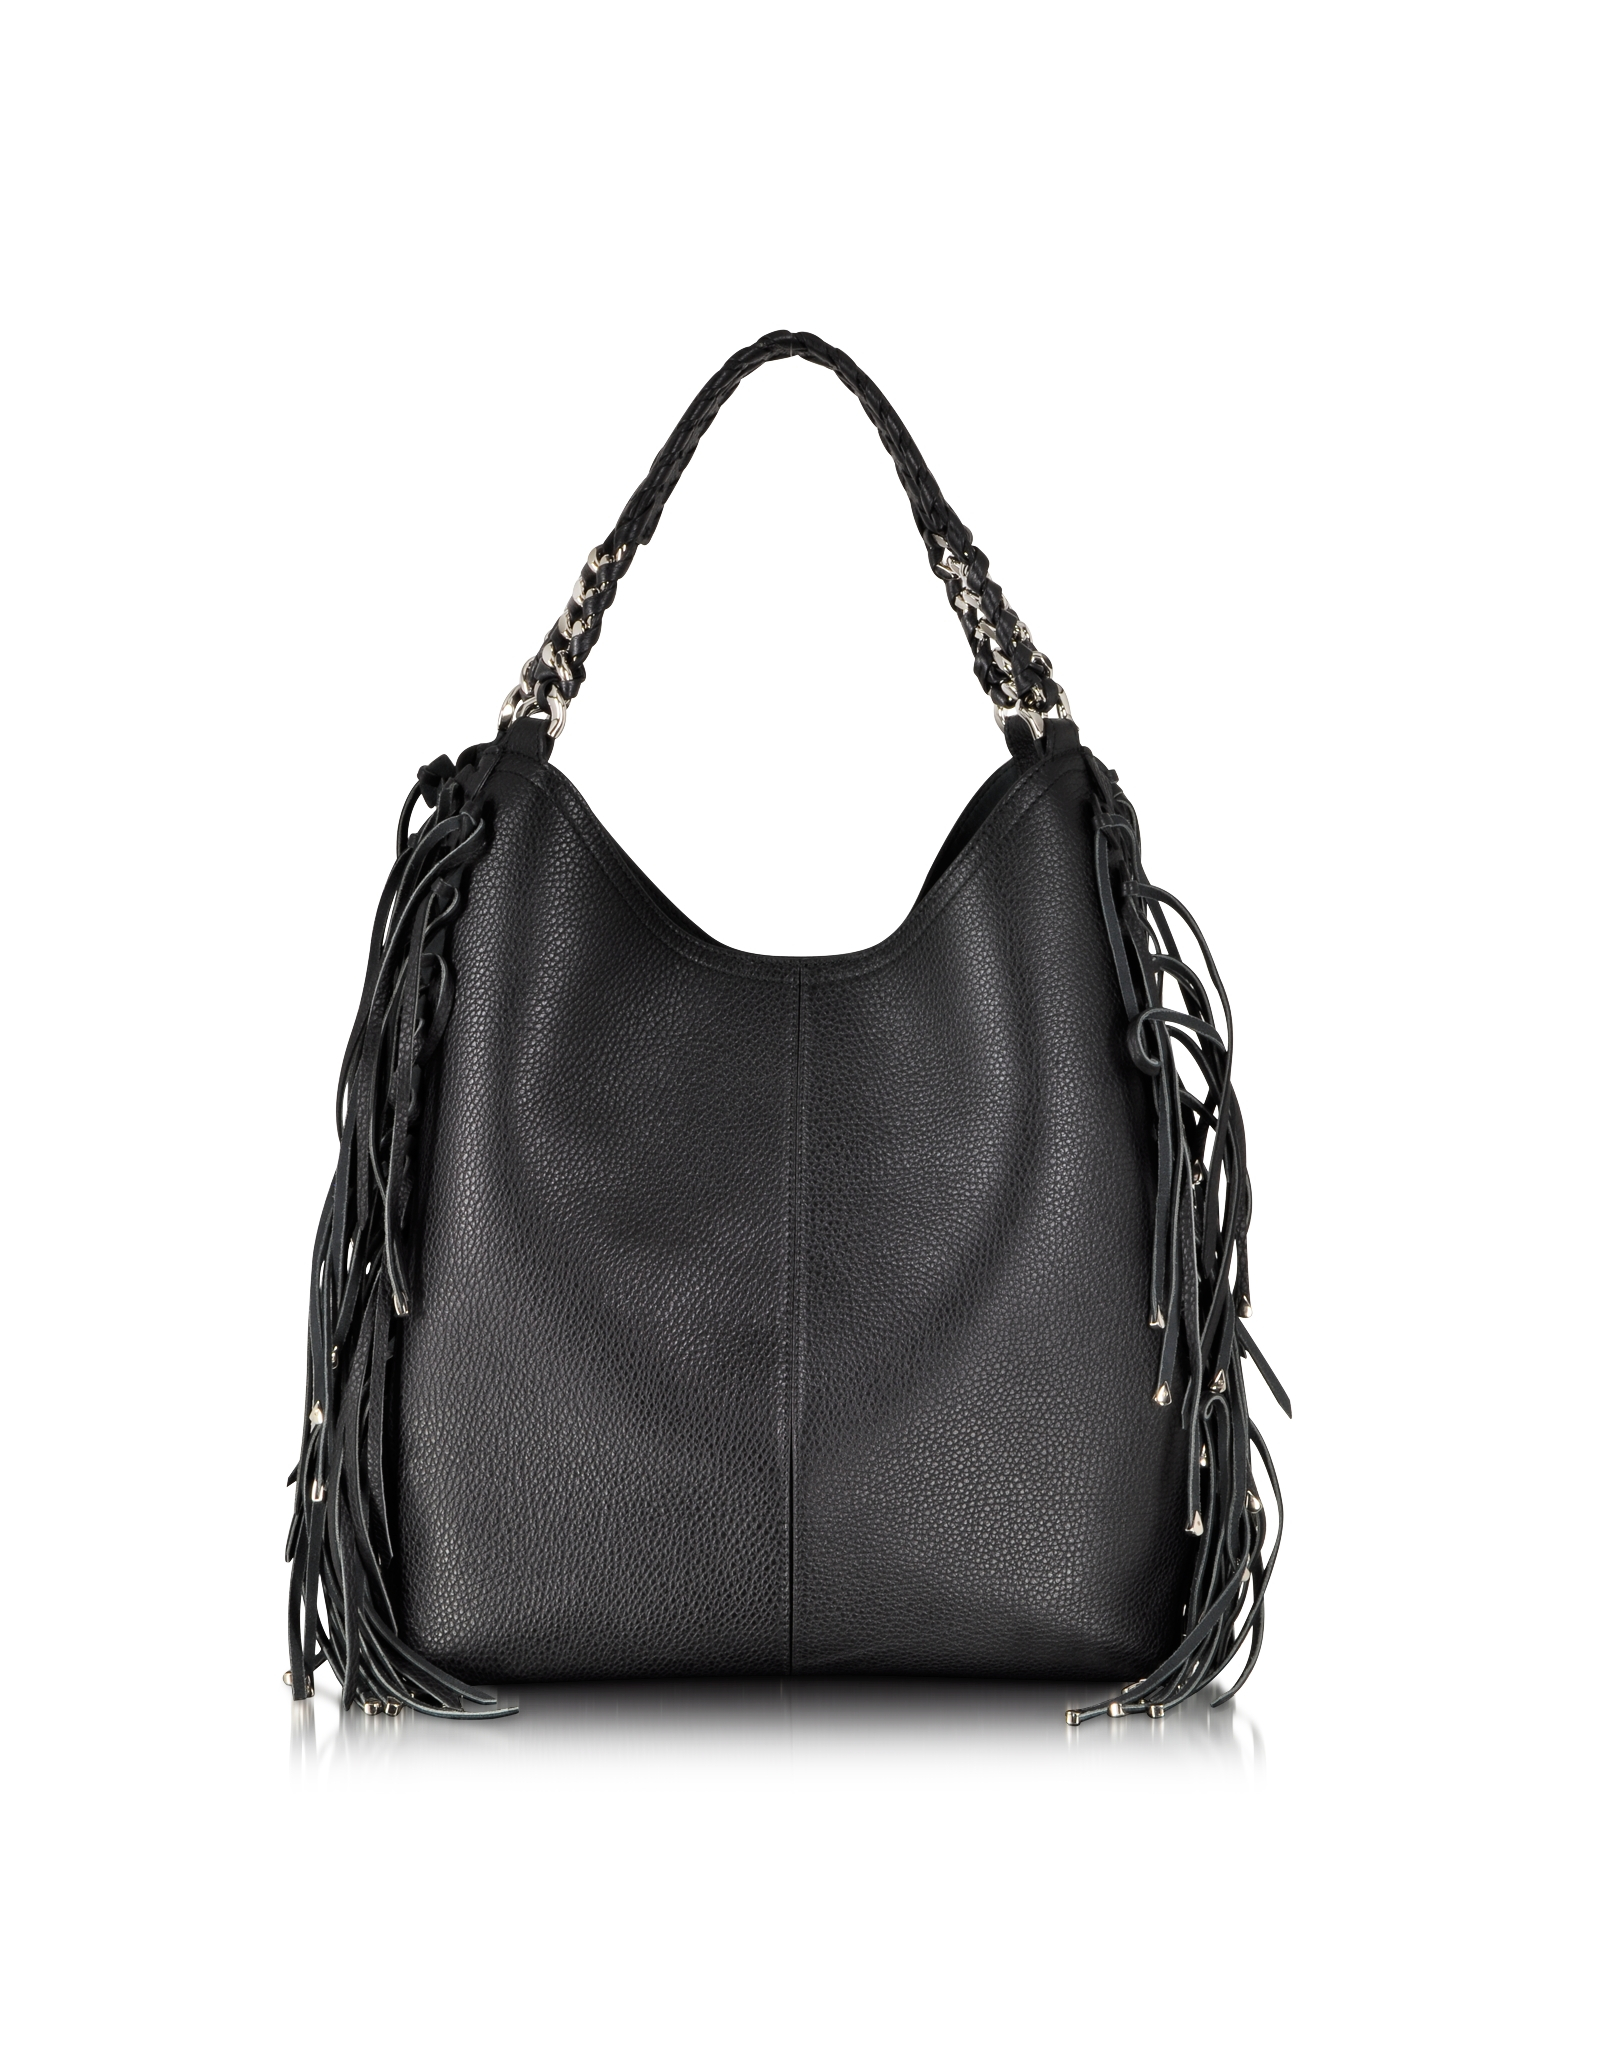 Roberto Cavalli Regina Fringe Black Leather Hobo Bag in Black - Lyst